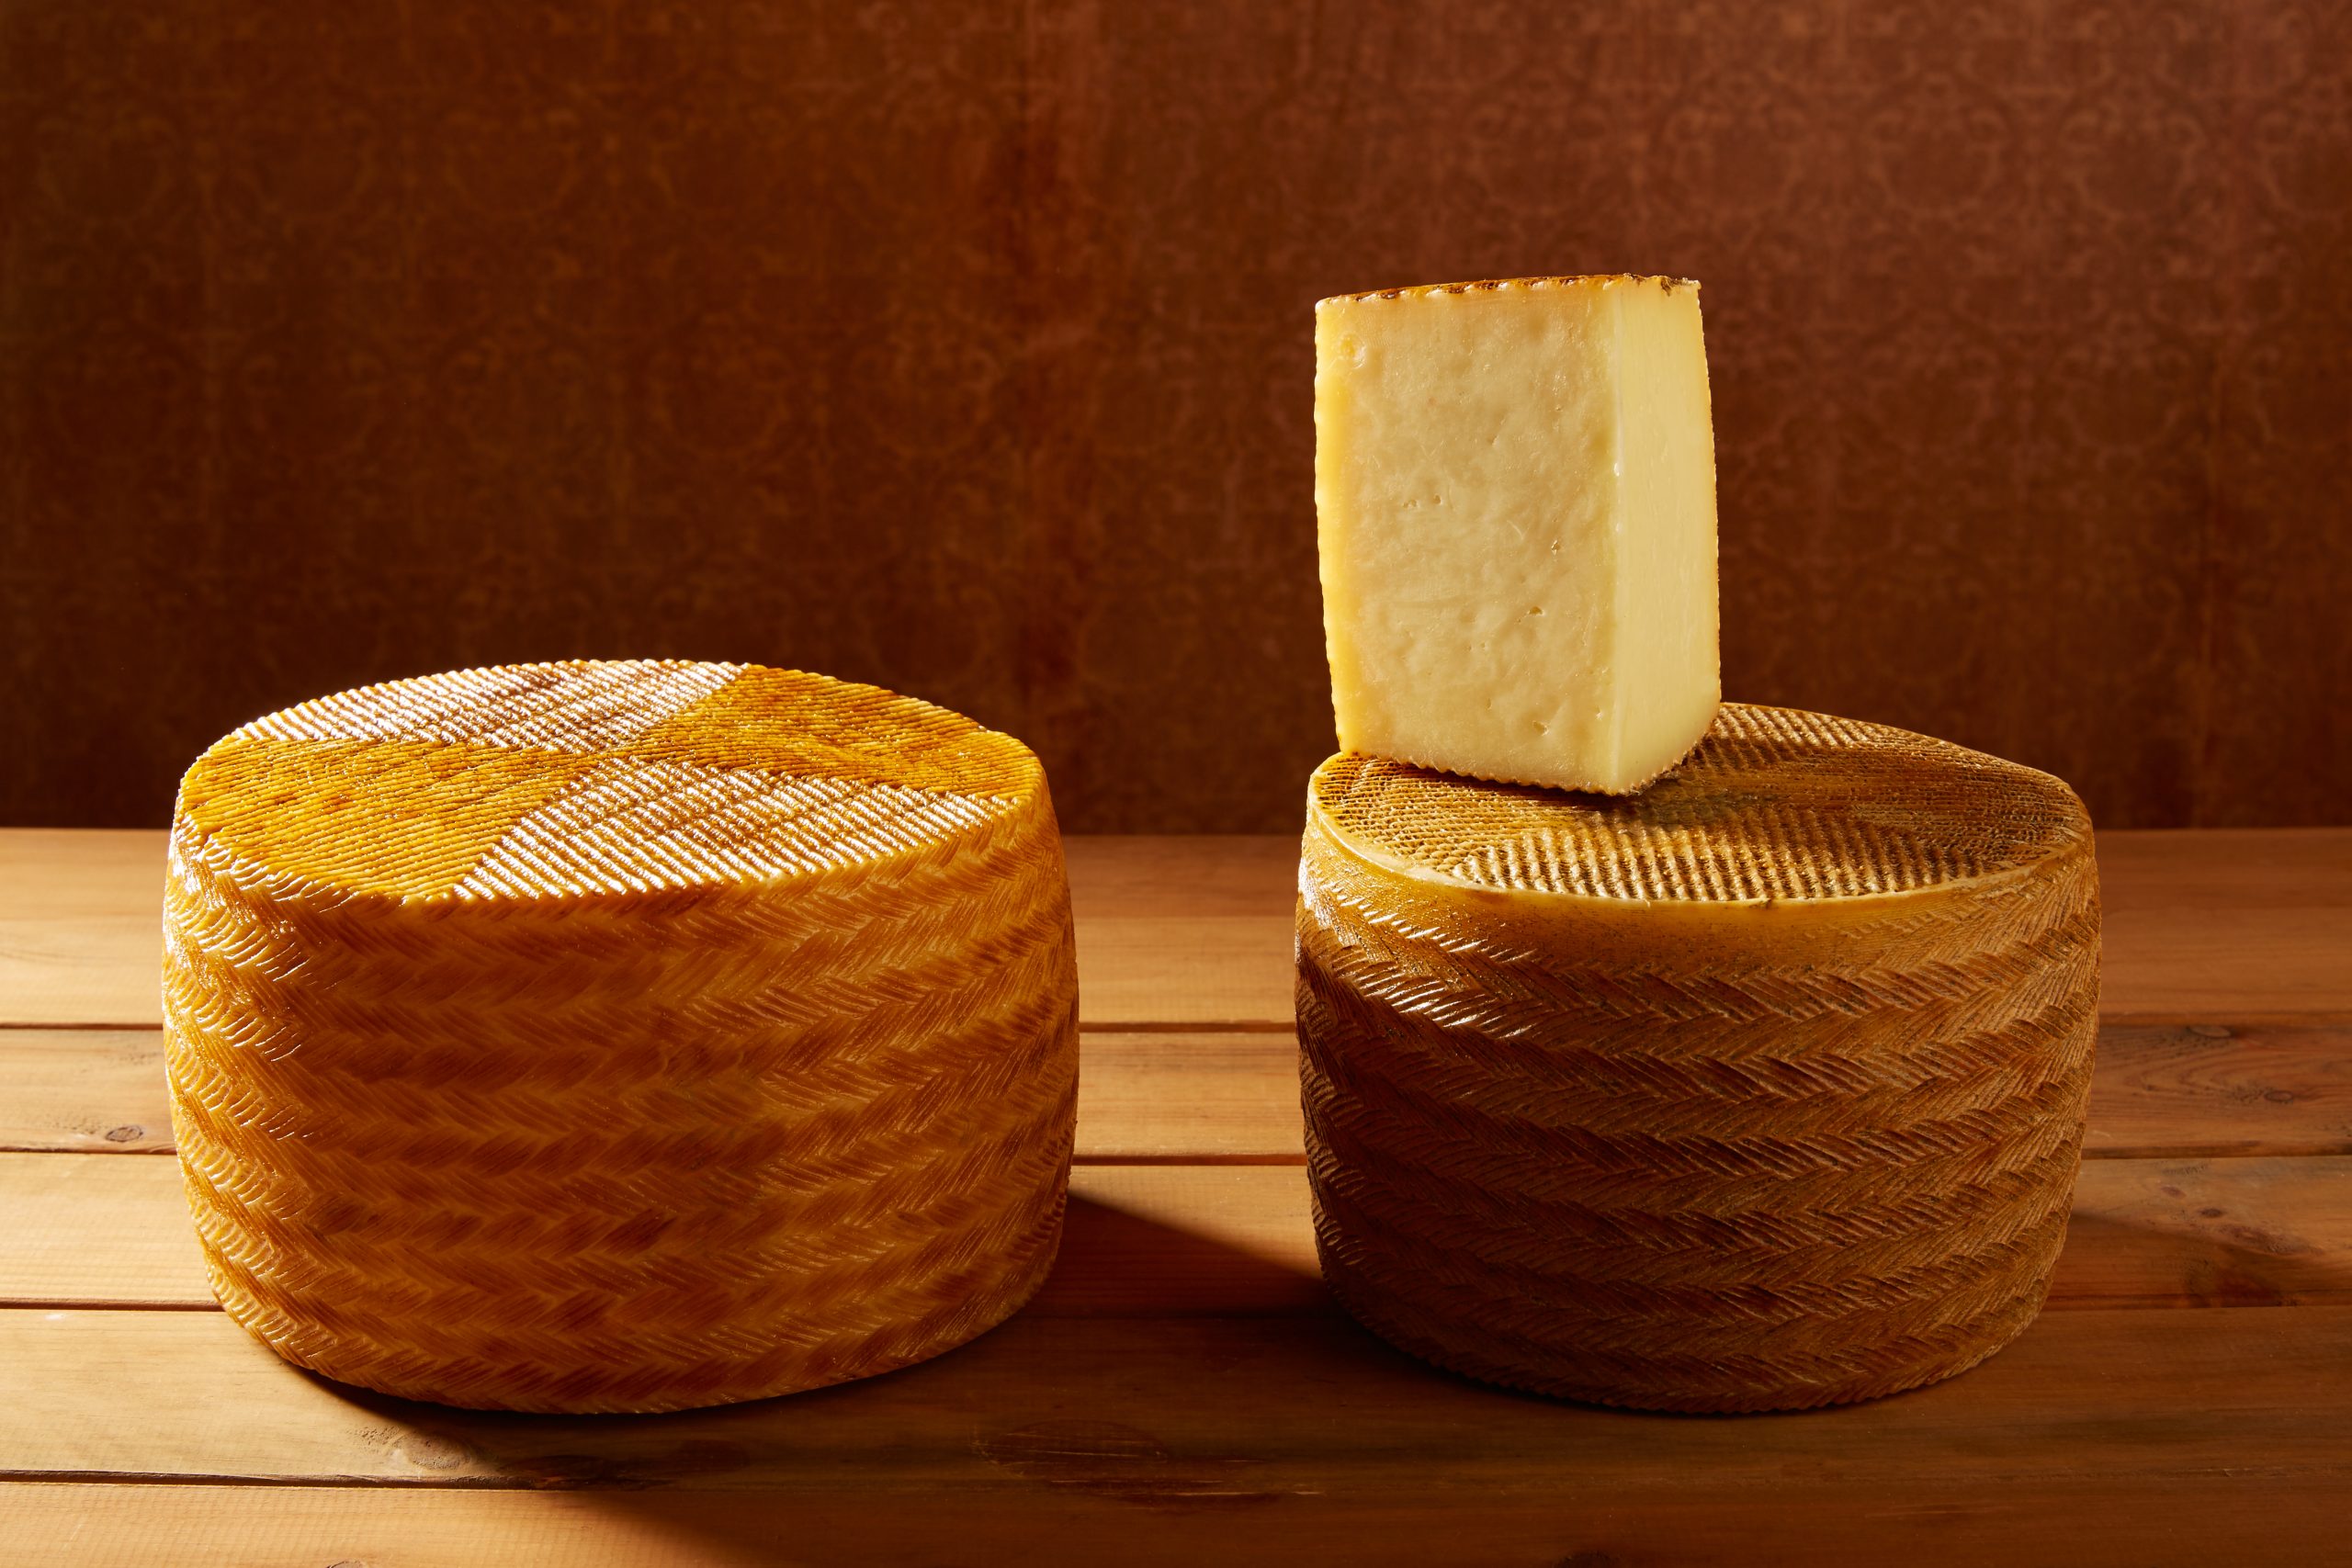 allargar vida util formatge